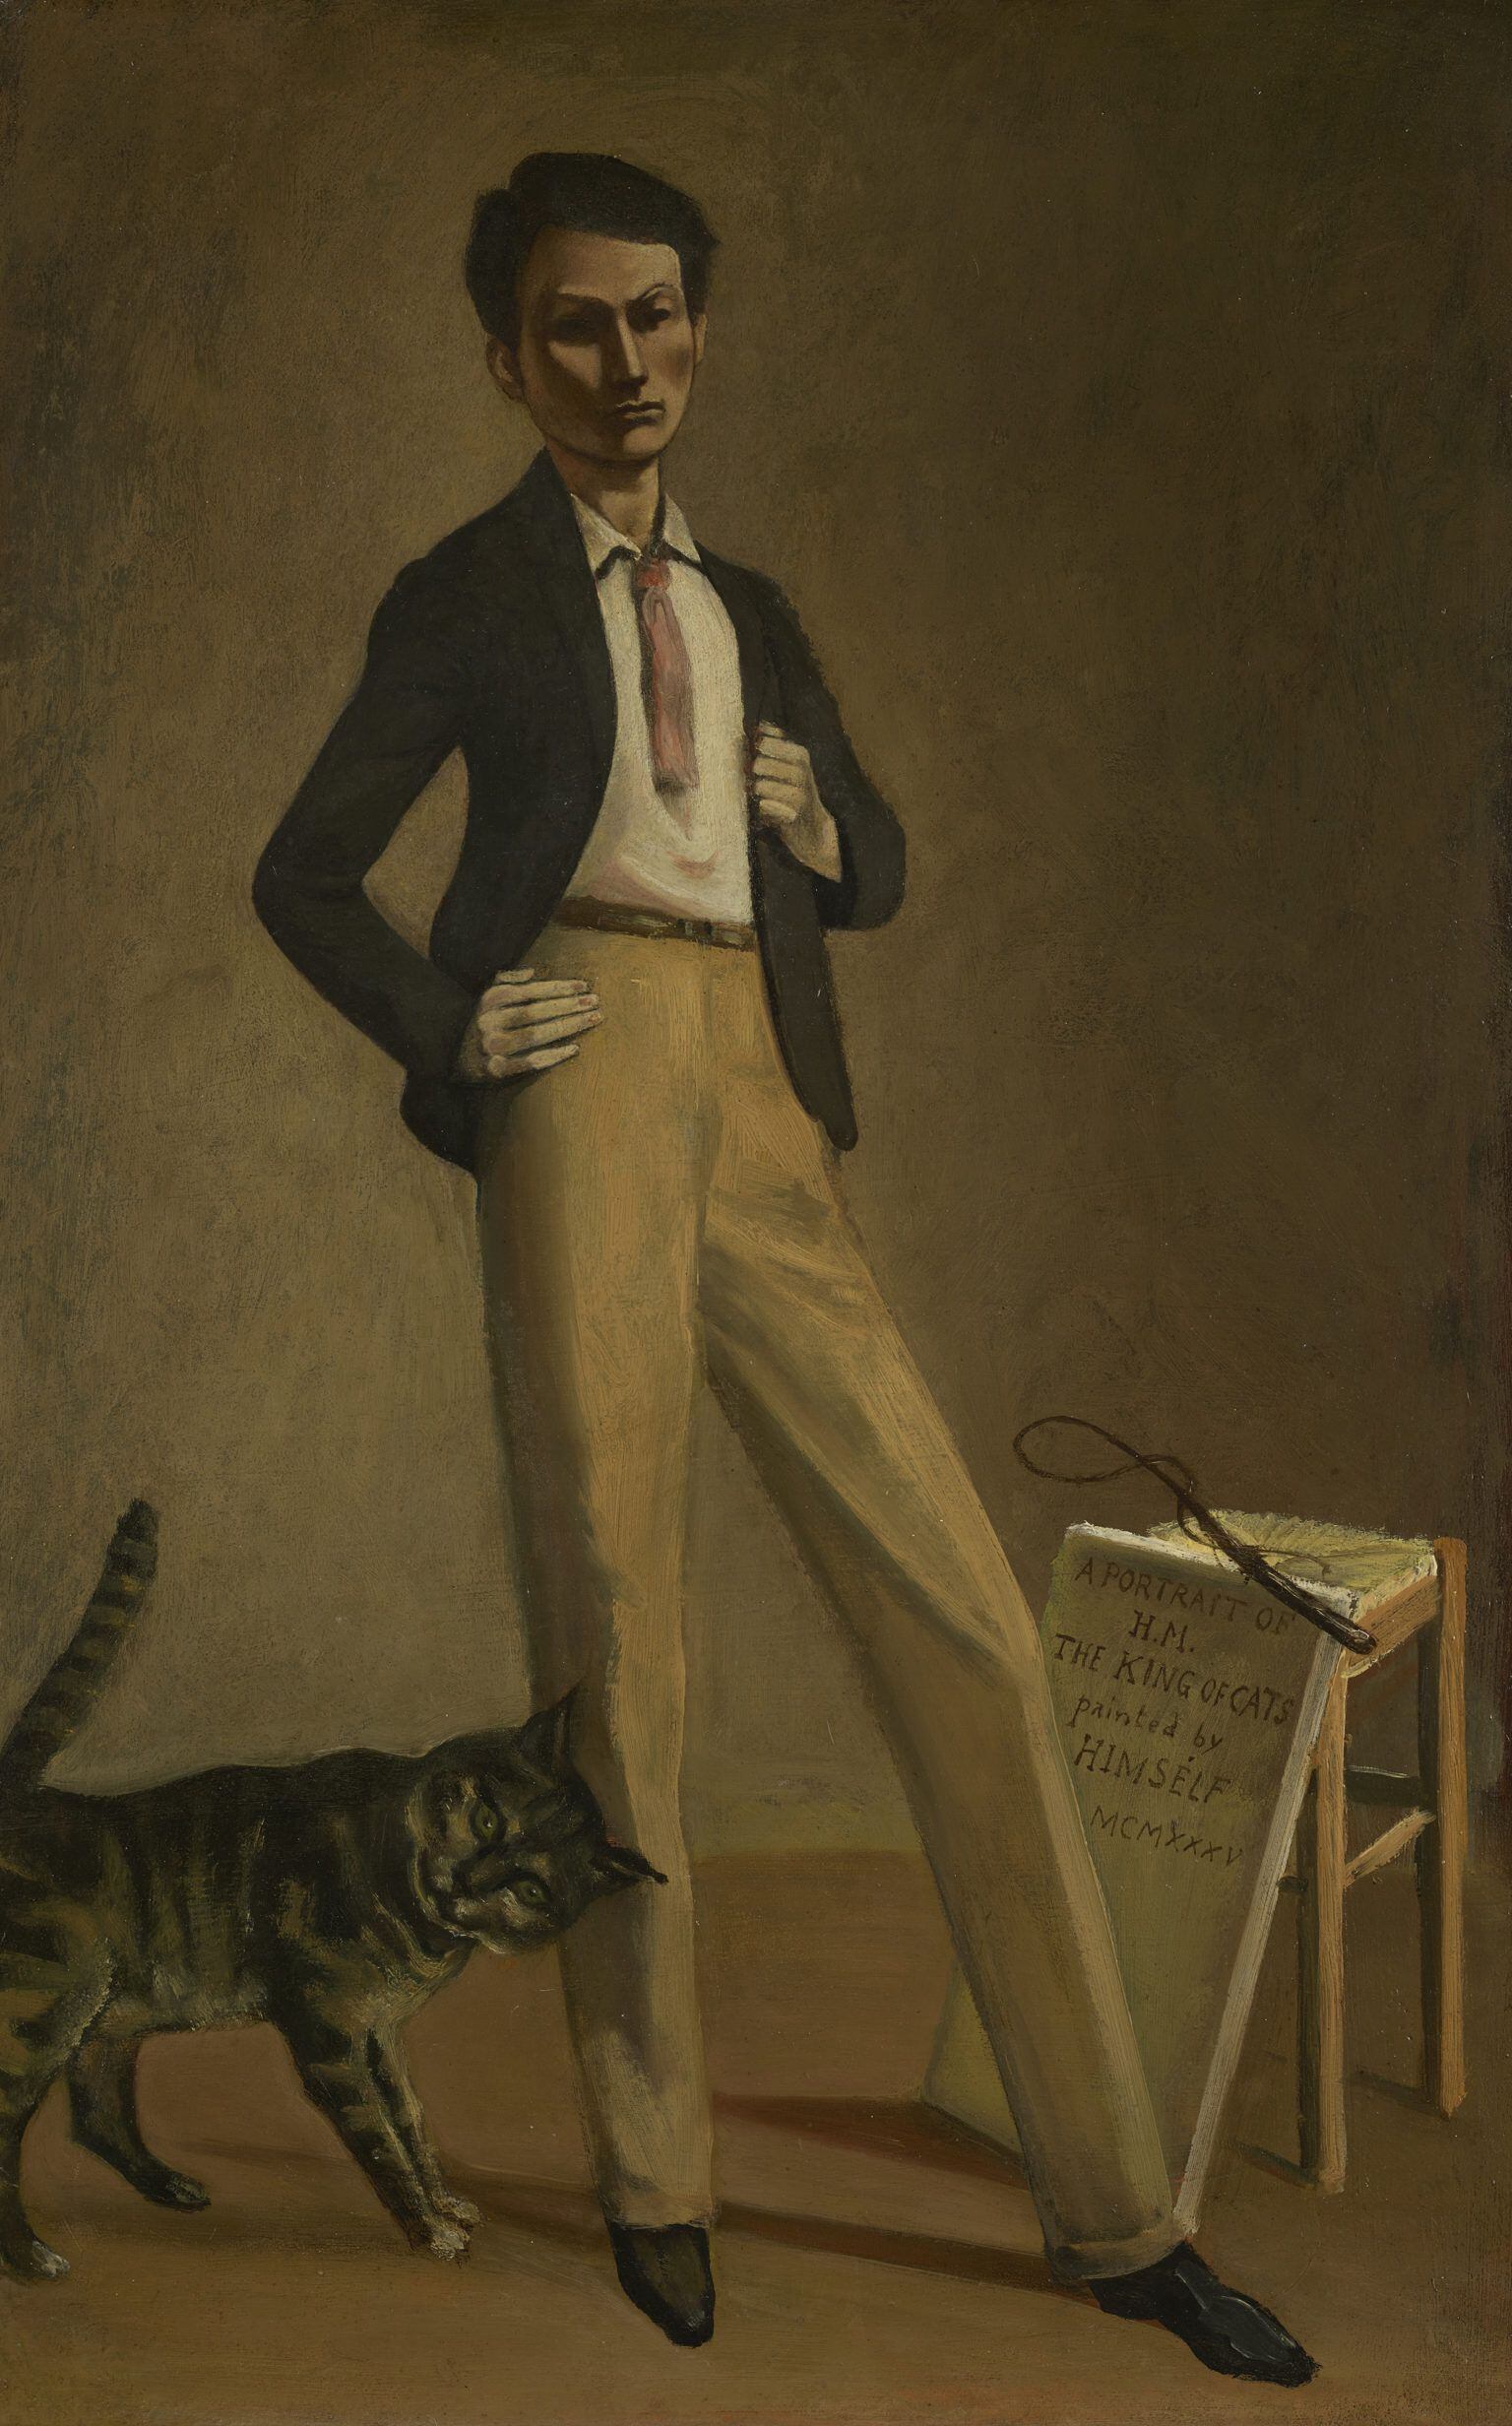 발튀스, 고양이들의 왕, 1935년, 캔버스에 유채, 78x49.7cm, 스위스 로잔주립미술관 소장.